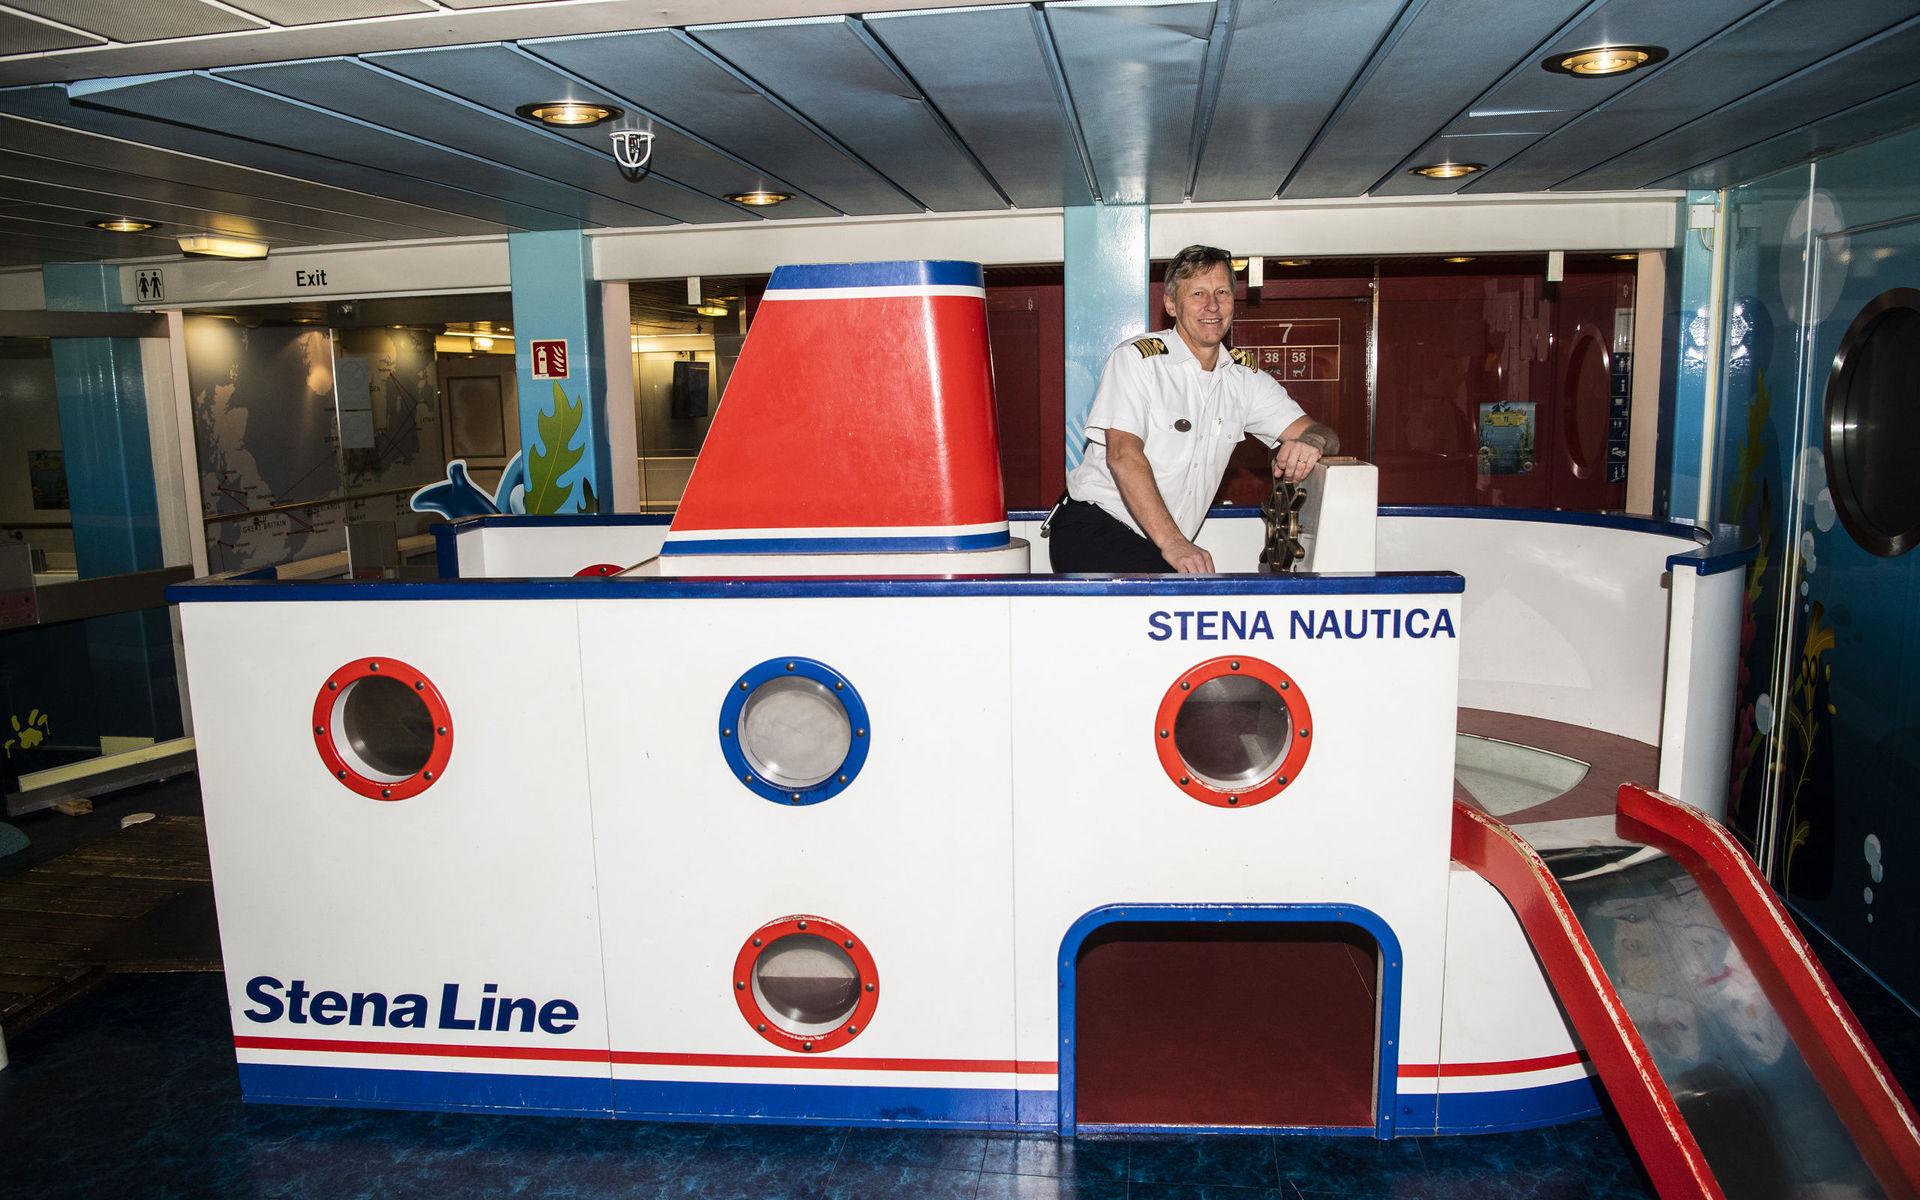 I lekrummet finns en miniatyrversion av Stena Nautica där barnen kan testa att styra fartyget. För den riktige kaptenen Jan-Erik Alcén är det förstås rena barnleken.